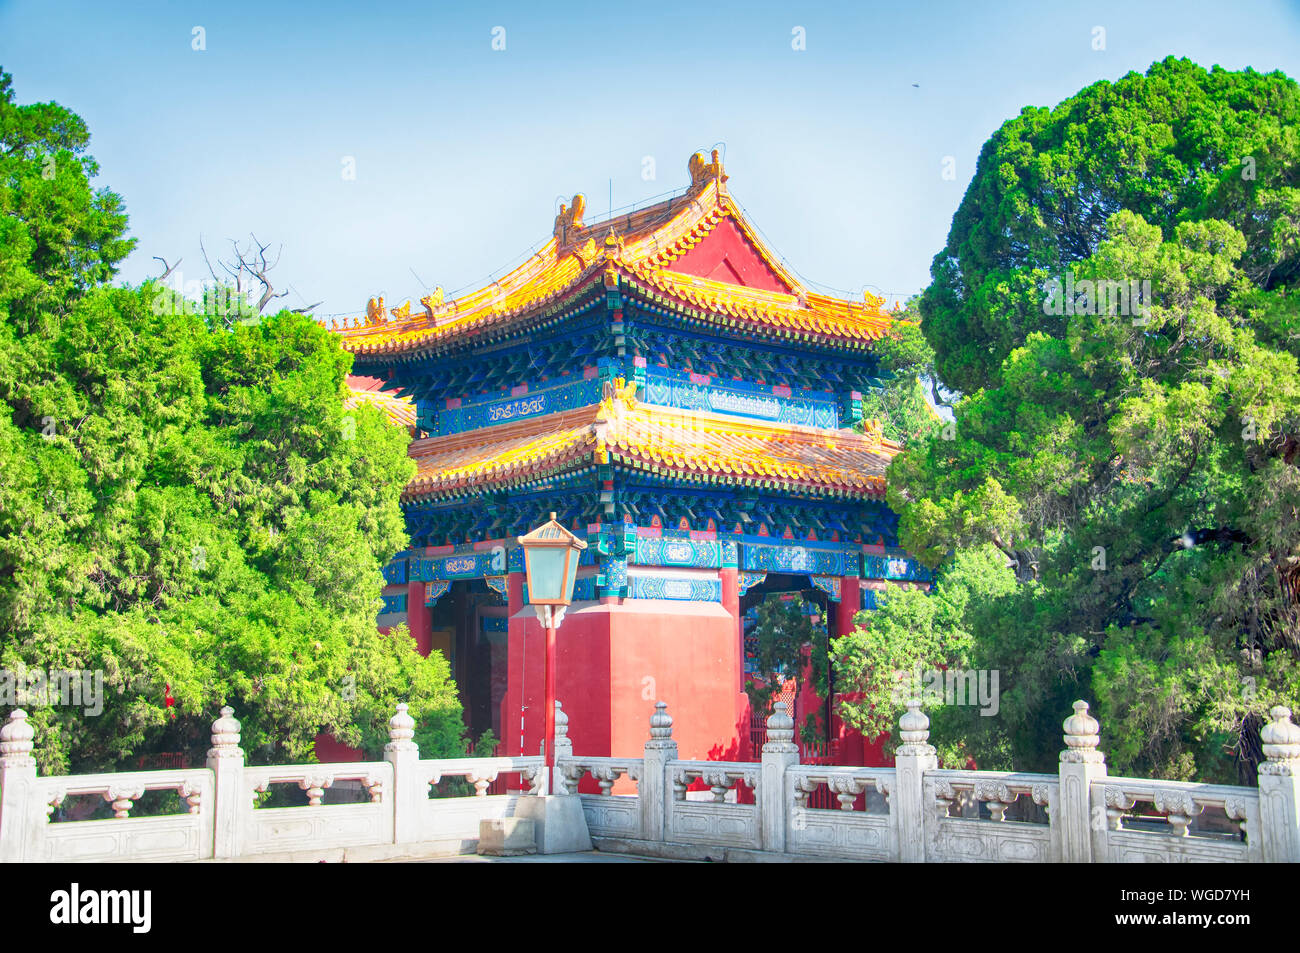 À l'architecture chinoise Yonghegong Lama Temple à Pékin Chine lors d'une journée ensoleillée. Banque D'Images